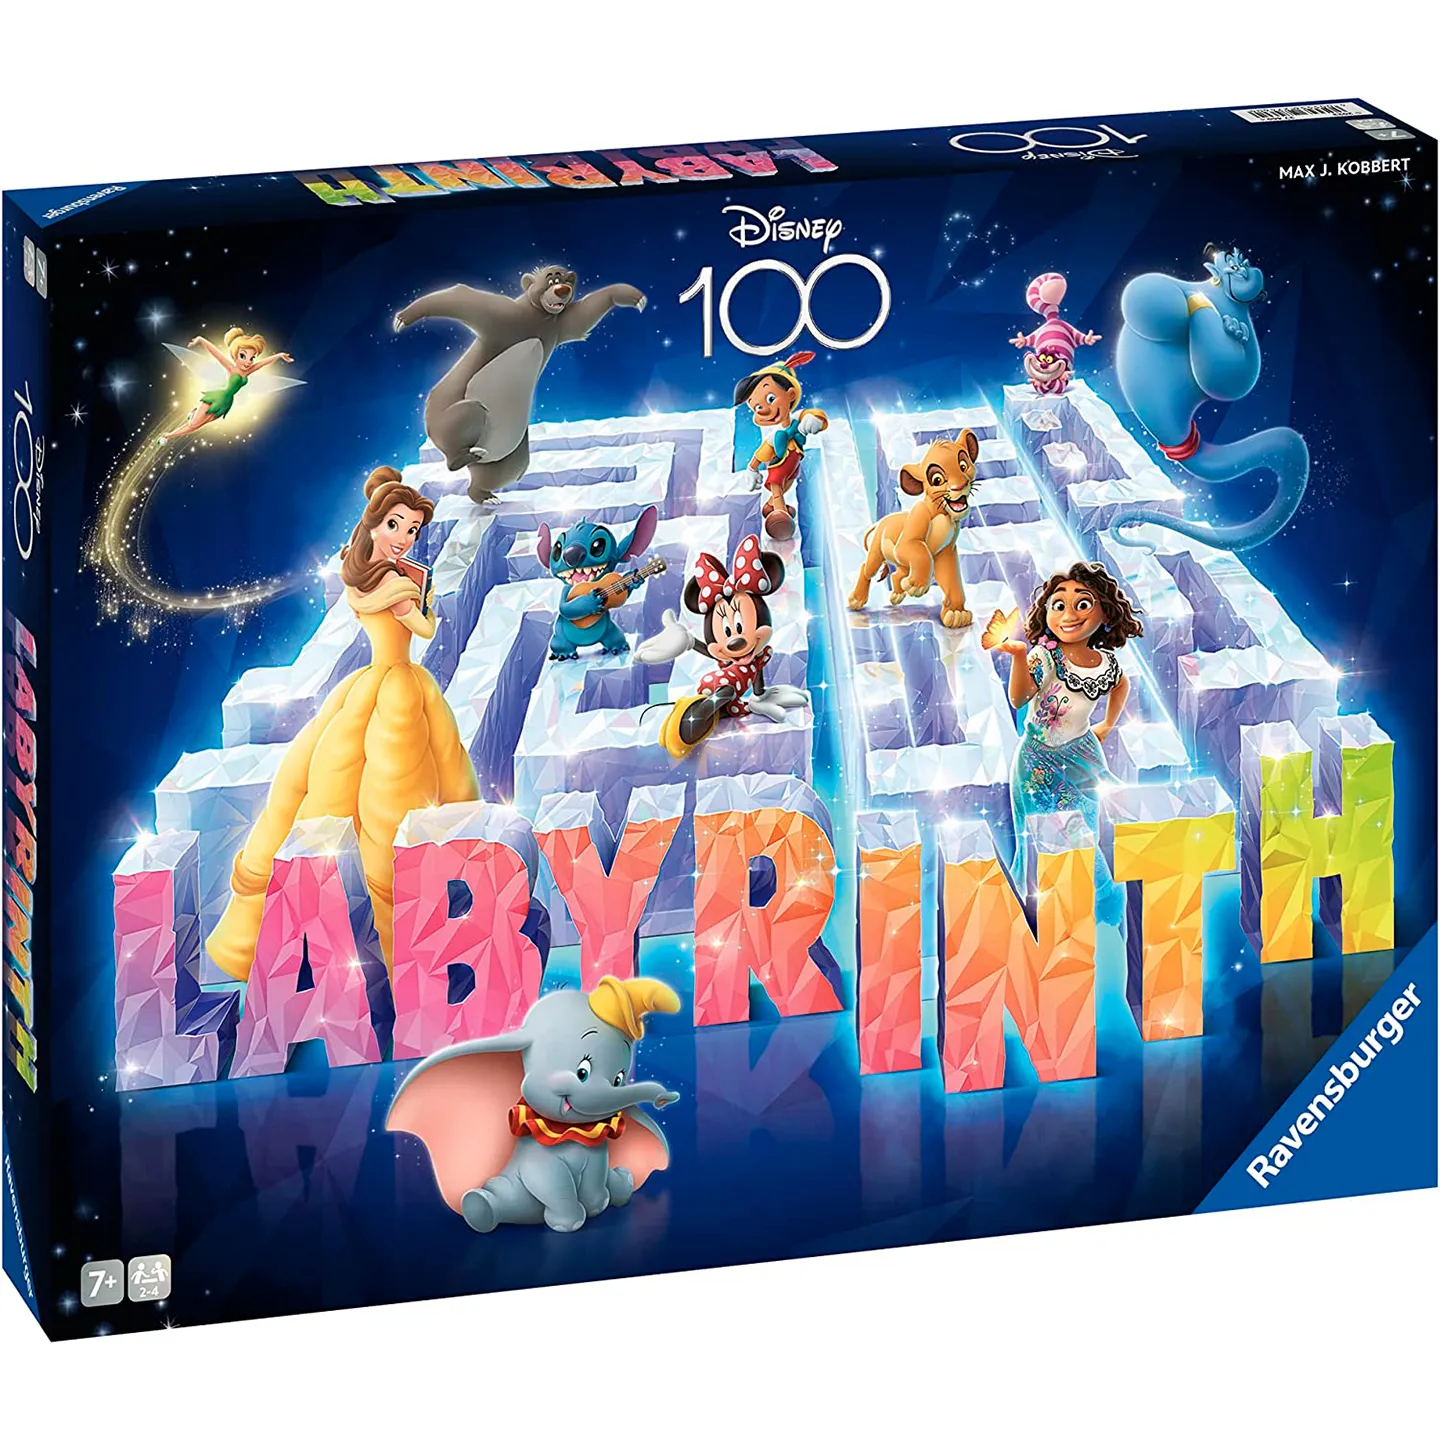 Божевільний лабіринт. 100 років Діснею (Das verruckte Labyrinth - Disney 100) (англ., нім.) - Настільна гра